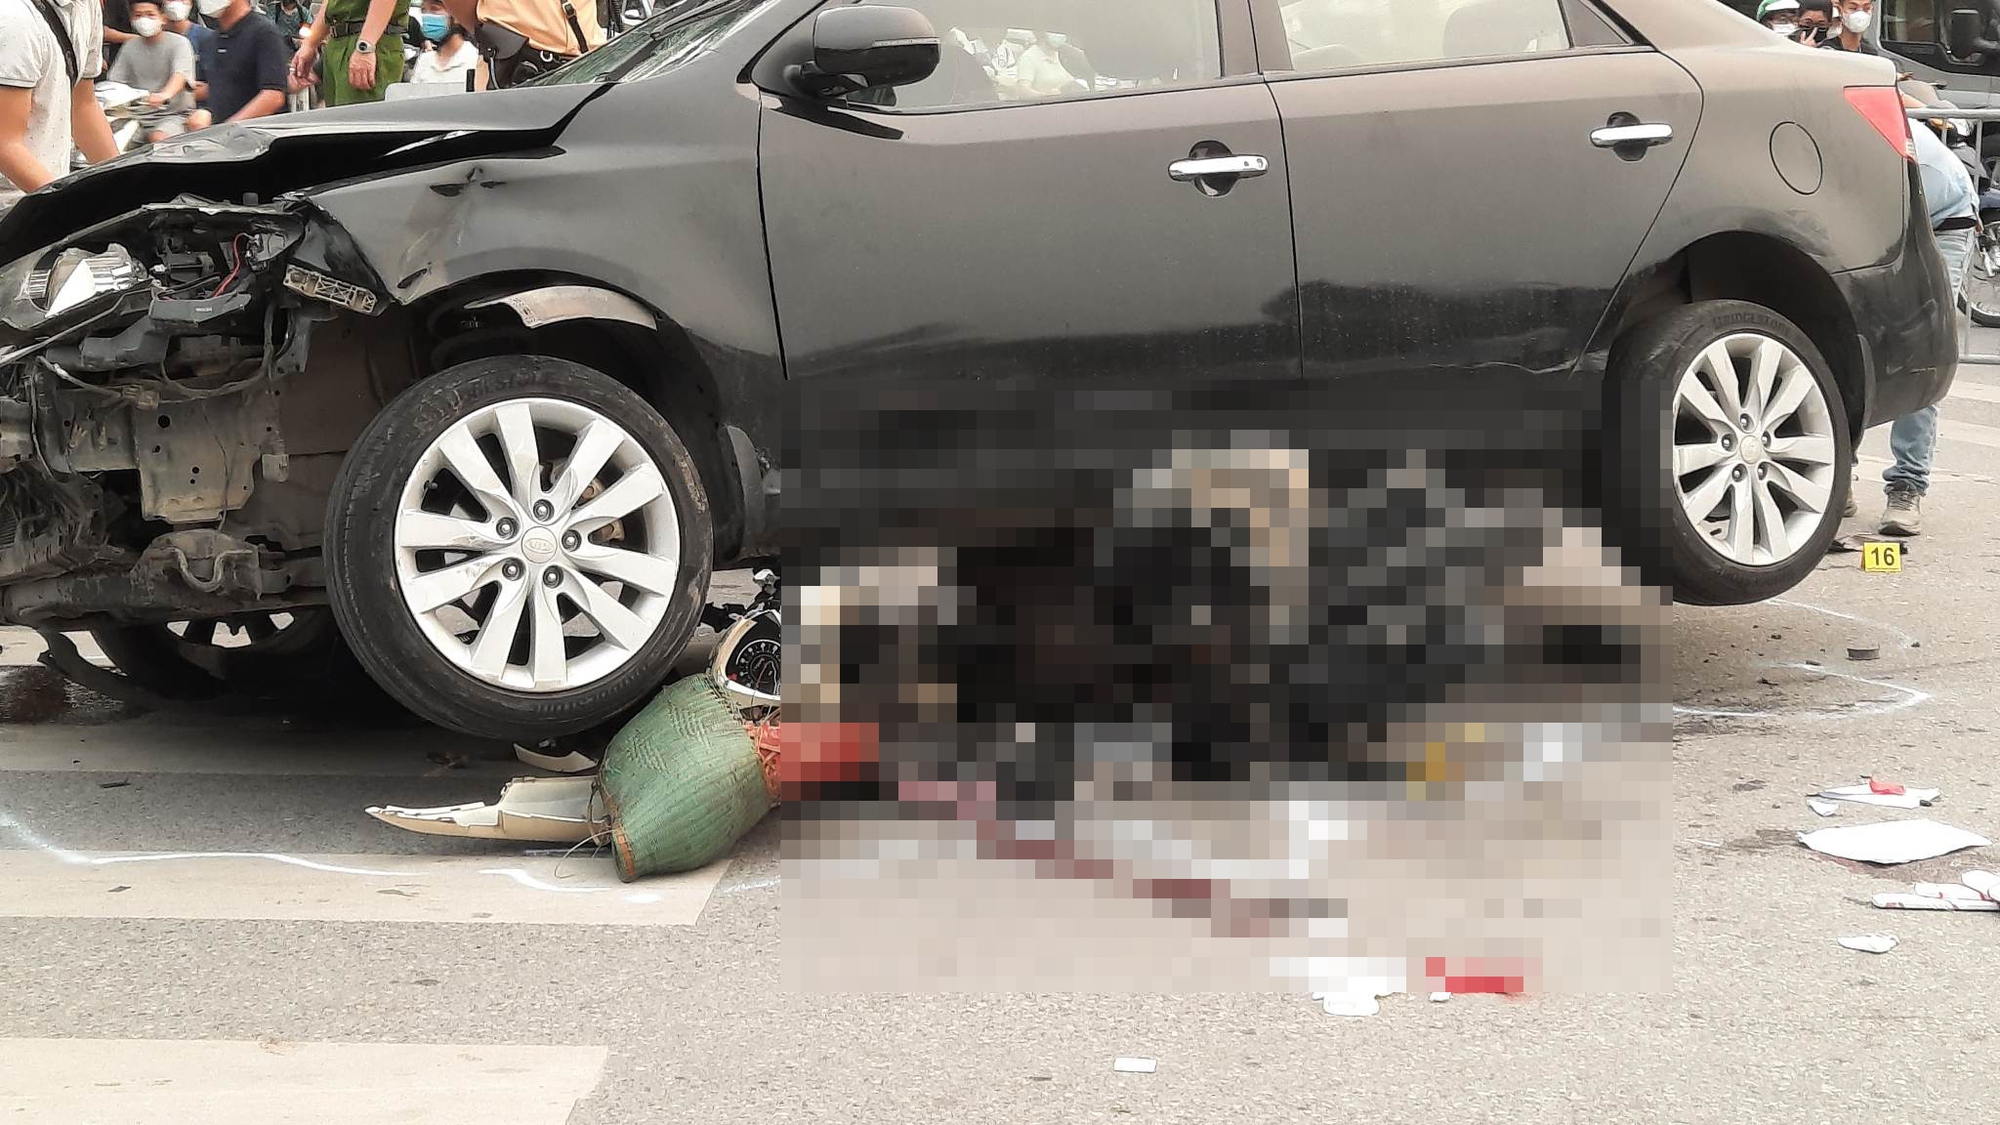 Chùm ảnh: Tình trạng sức khỏe các nạn nhân trong vụ 'xe điên' tông liên hoàn trên đường Võ Chí Công - Ảnh 8.